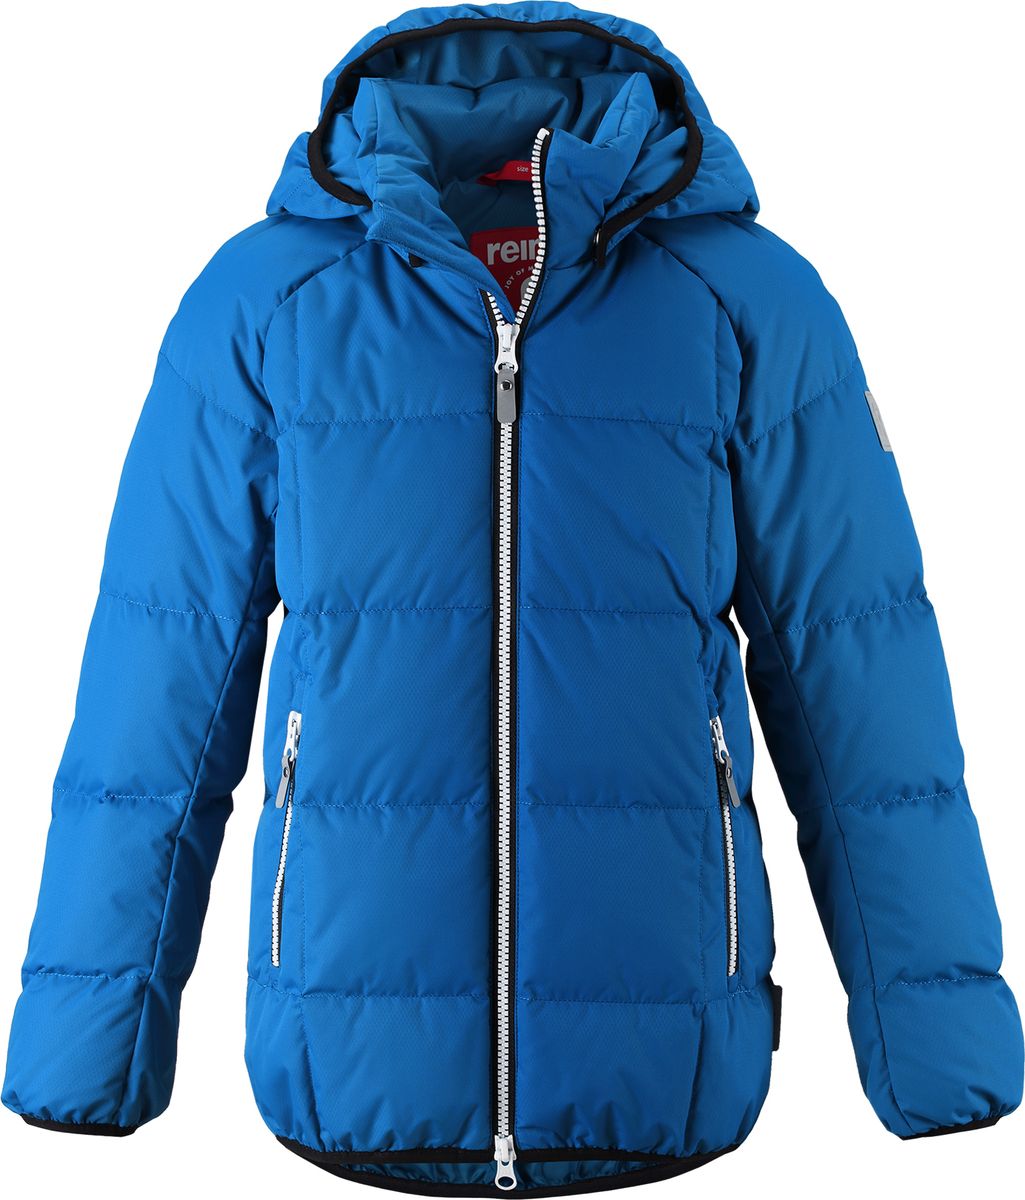 Куртка для мальчика Reima Jord, цвет: синий. 5313596680. Размер 128